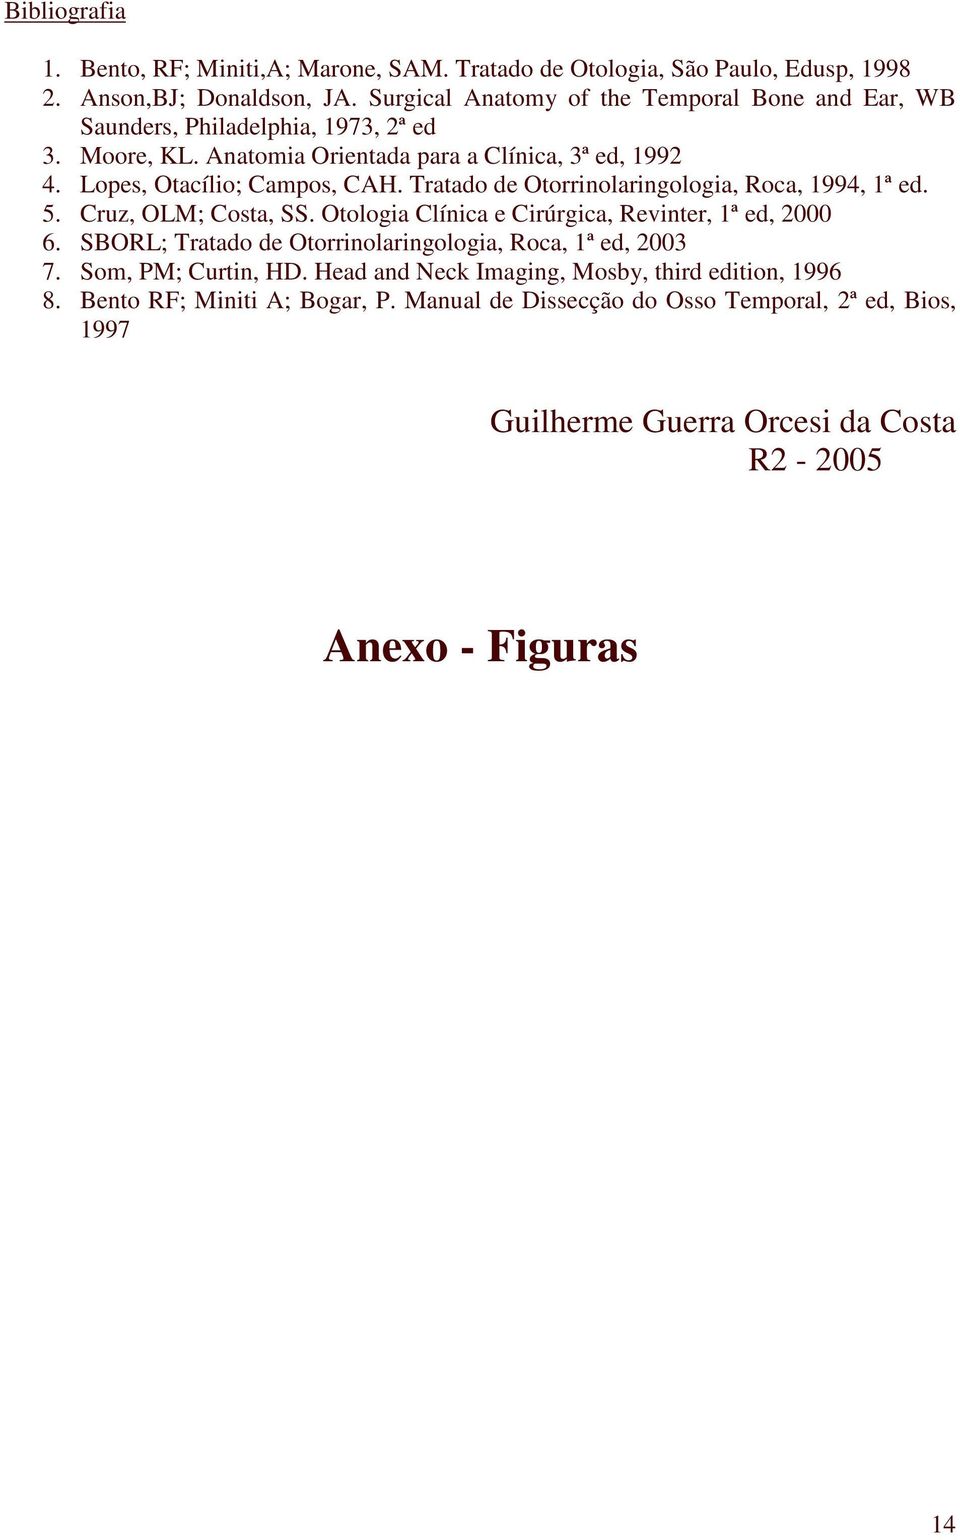 Tratado de Otorrinolaringologia, Roca, 1994, 1ª ed. 5. Cruz, OLM; Costa, SS. Otologia Clínica e Cirúrgica, Revinter, 1ª ed, 2000 6.